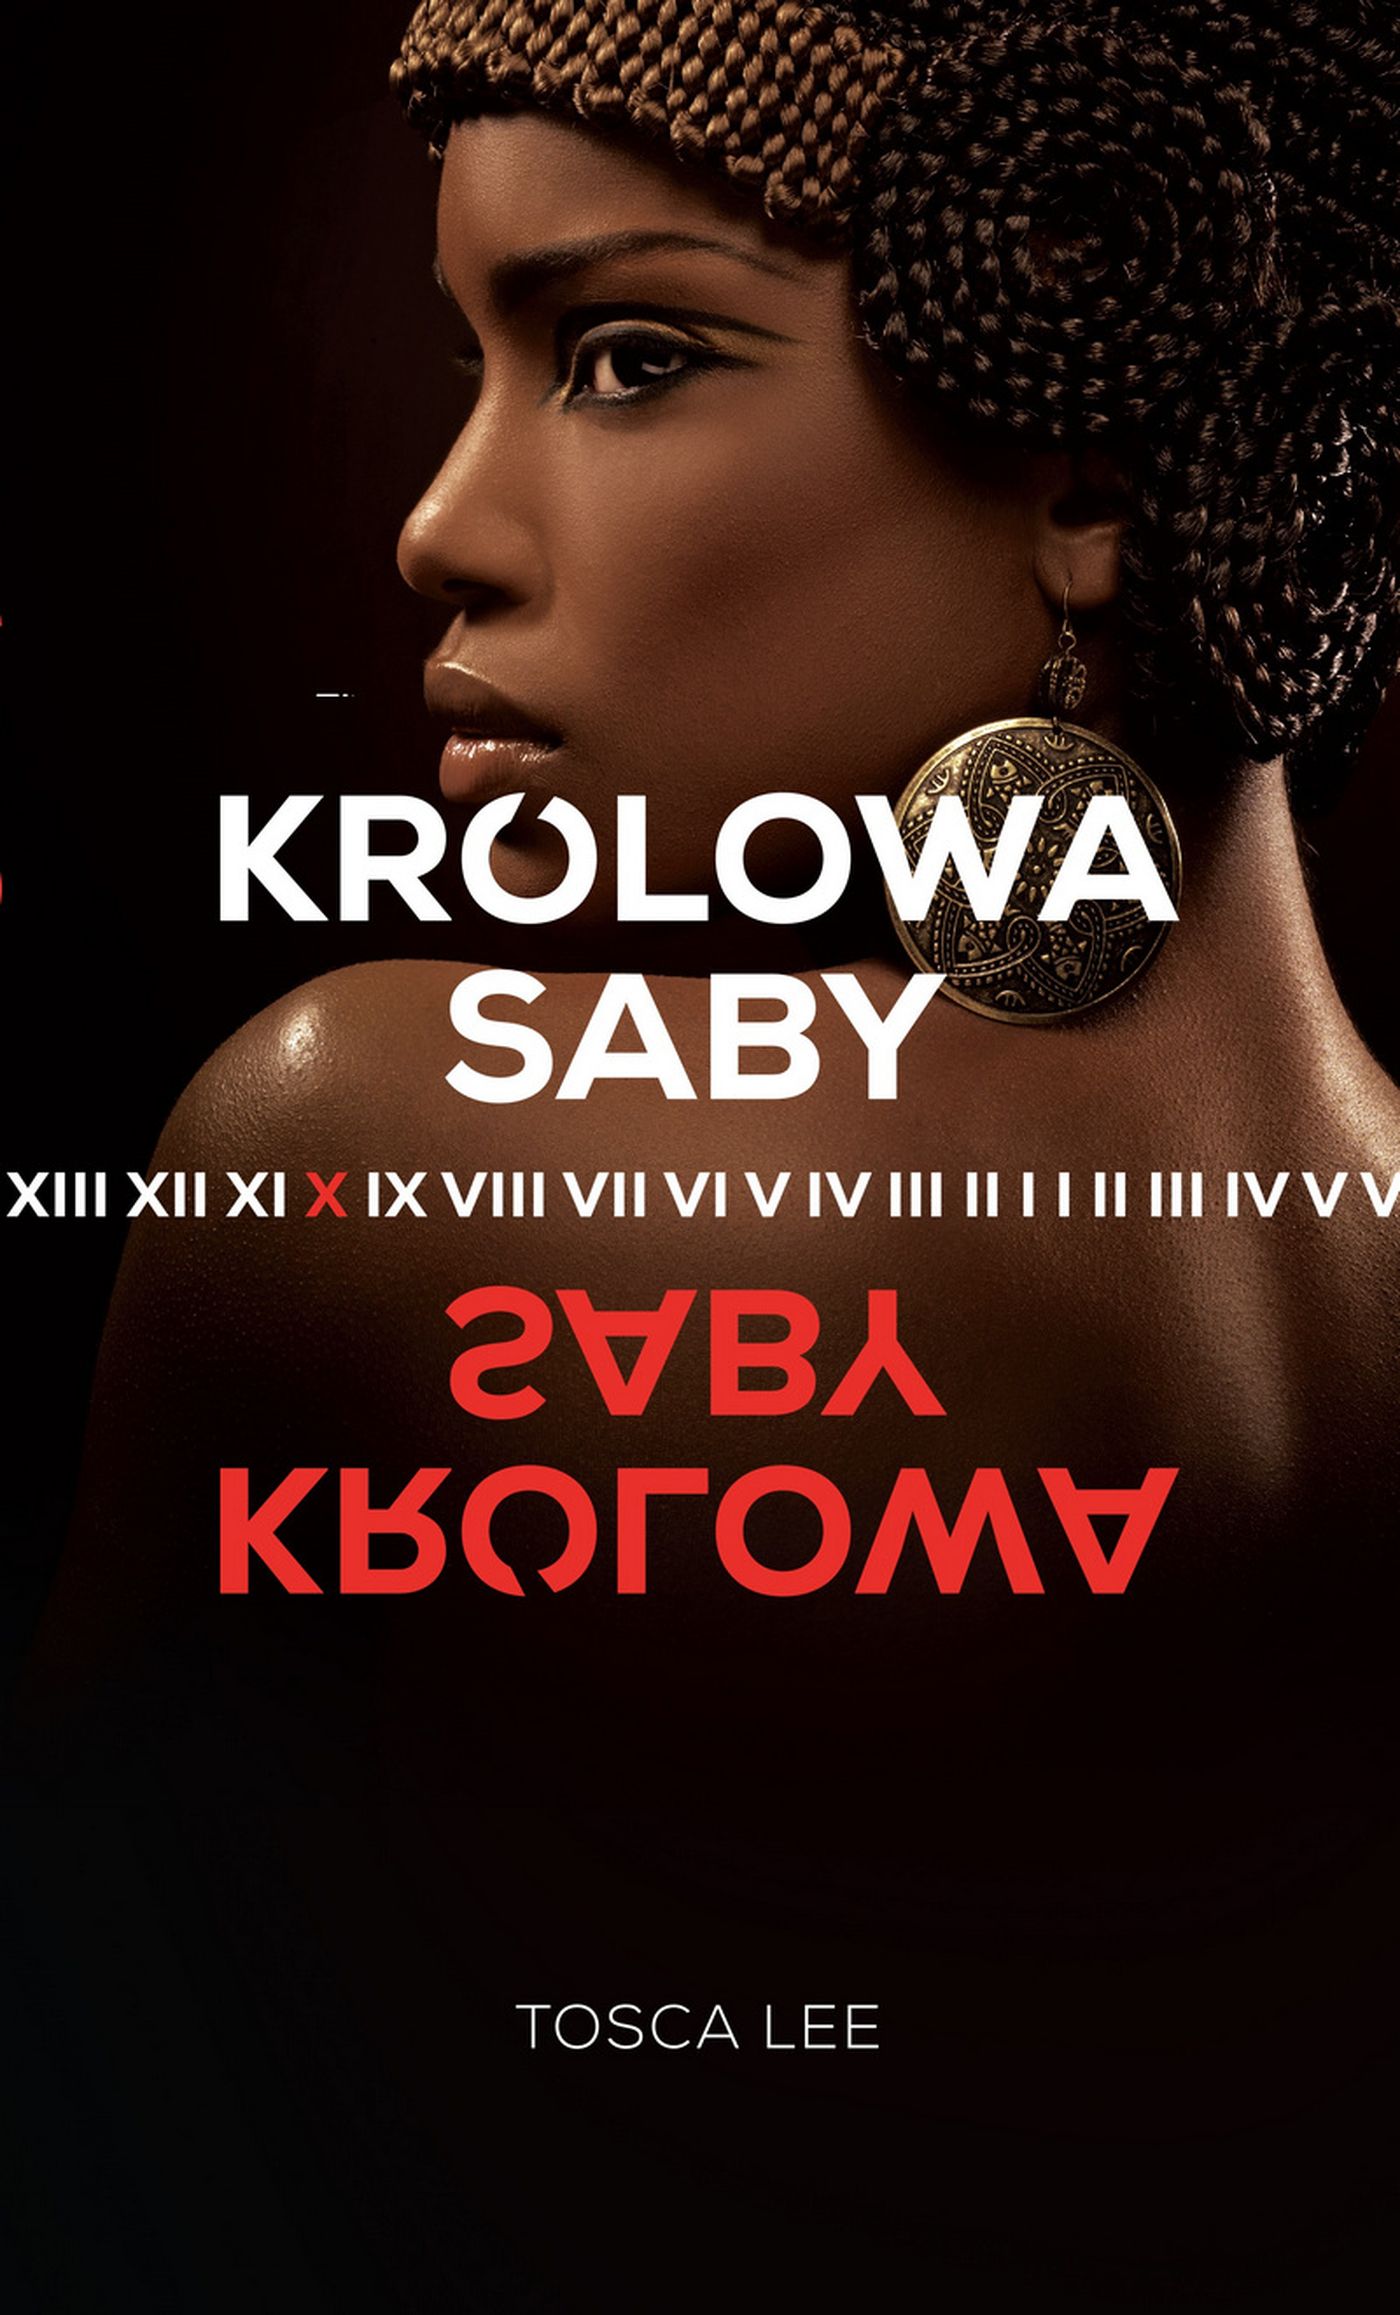 Królowa Saby - Darmowa dostawa - Sklep muve.pl